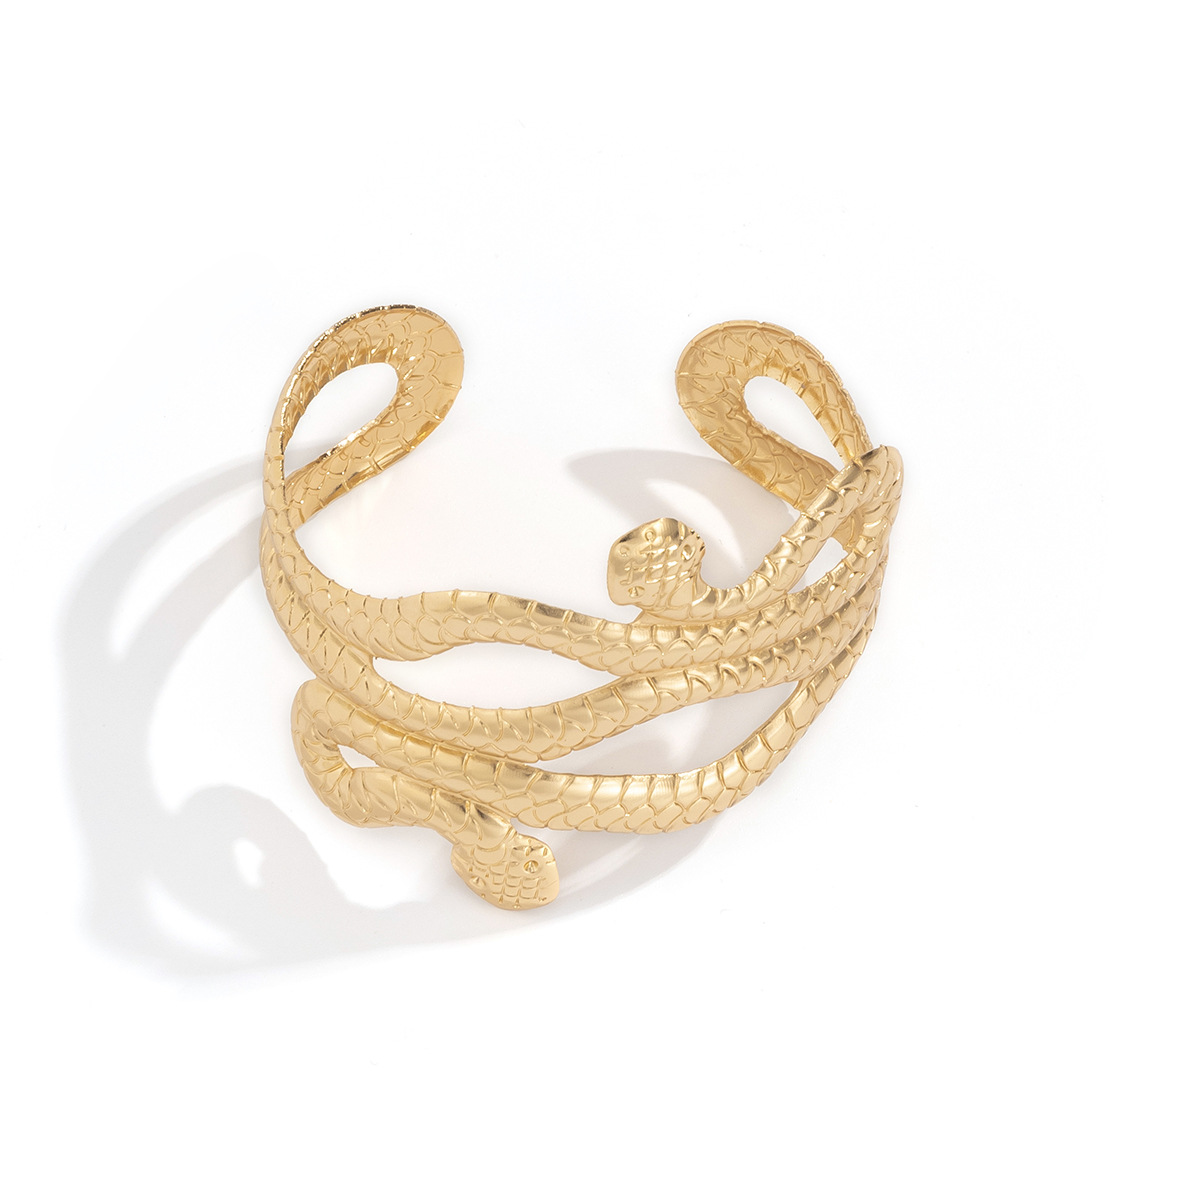 Snake Bracelet Gold Snake Bangle Snake Cuff Luxury Bracelet Snake Jewelry  Unique Jewelry Unique Bracelet Thin Snake Bracelet 